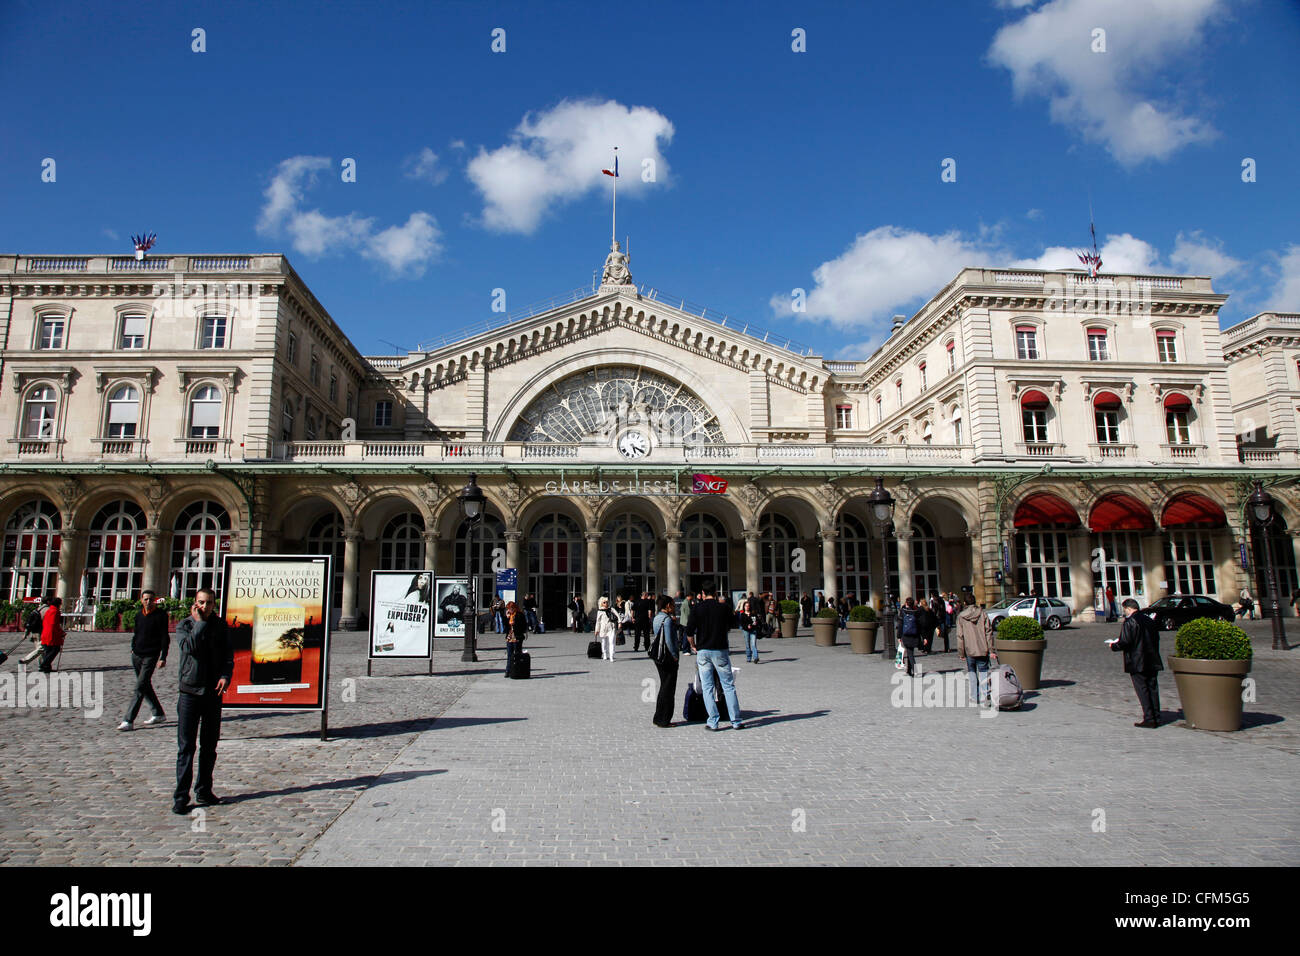 Gare de l'Est railway station, Paris, France, Europe Stock Photo